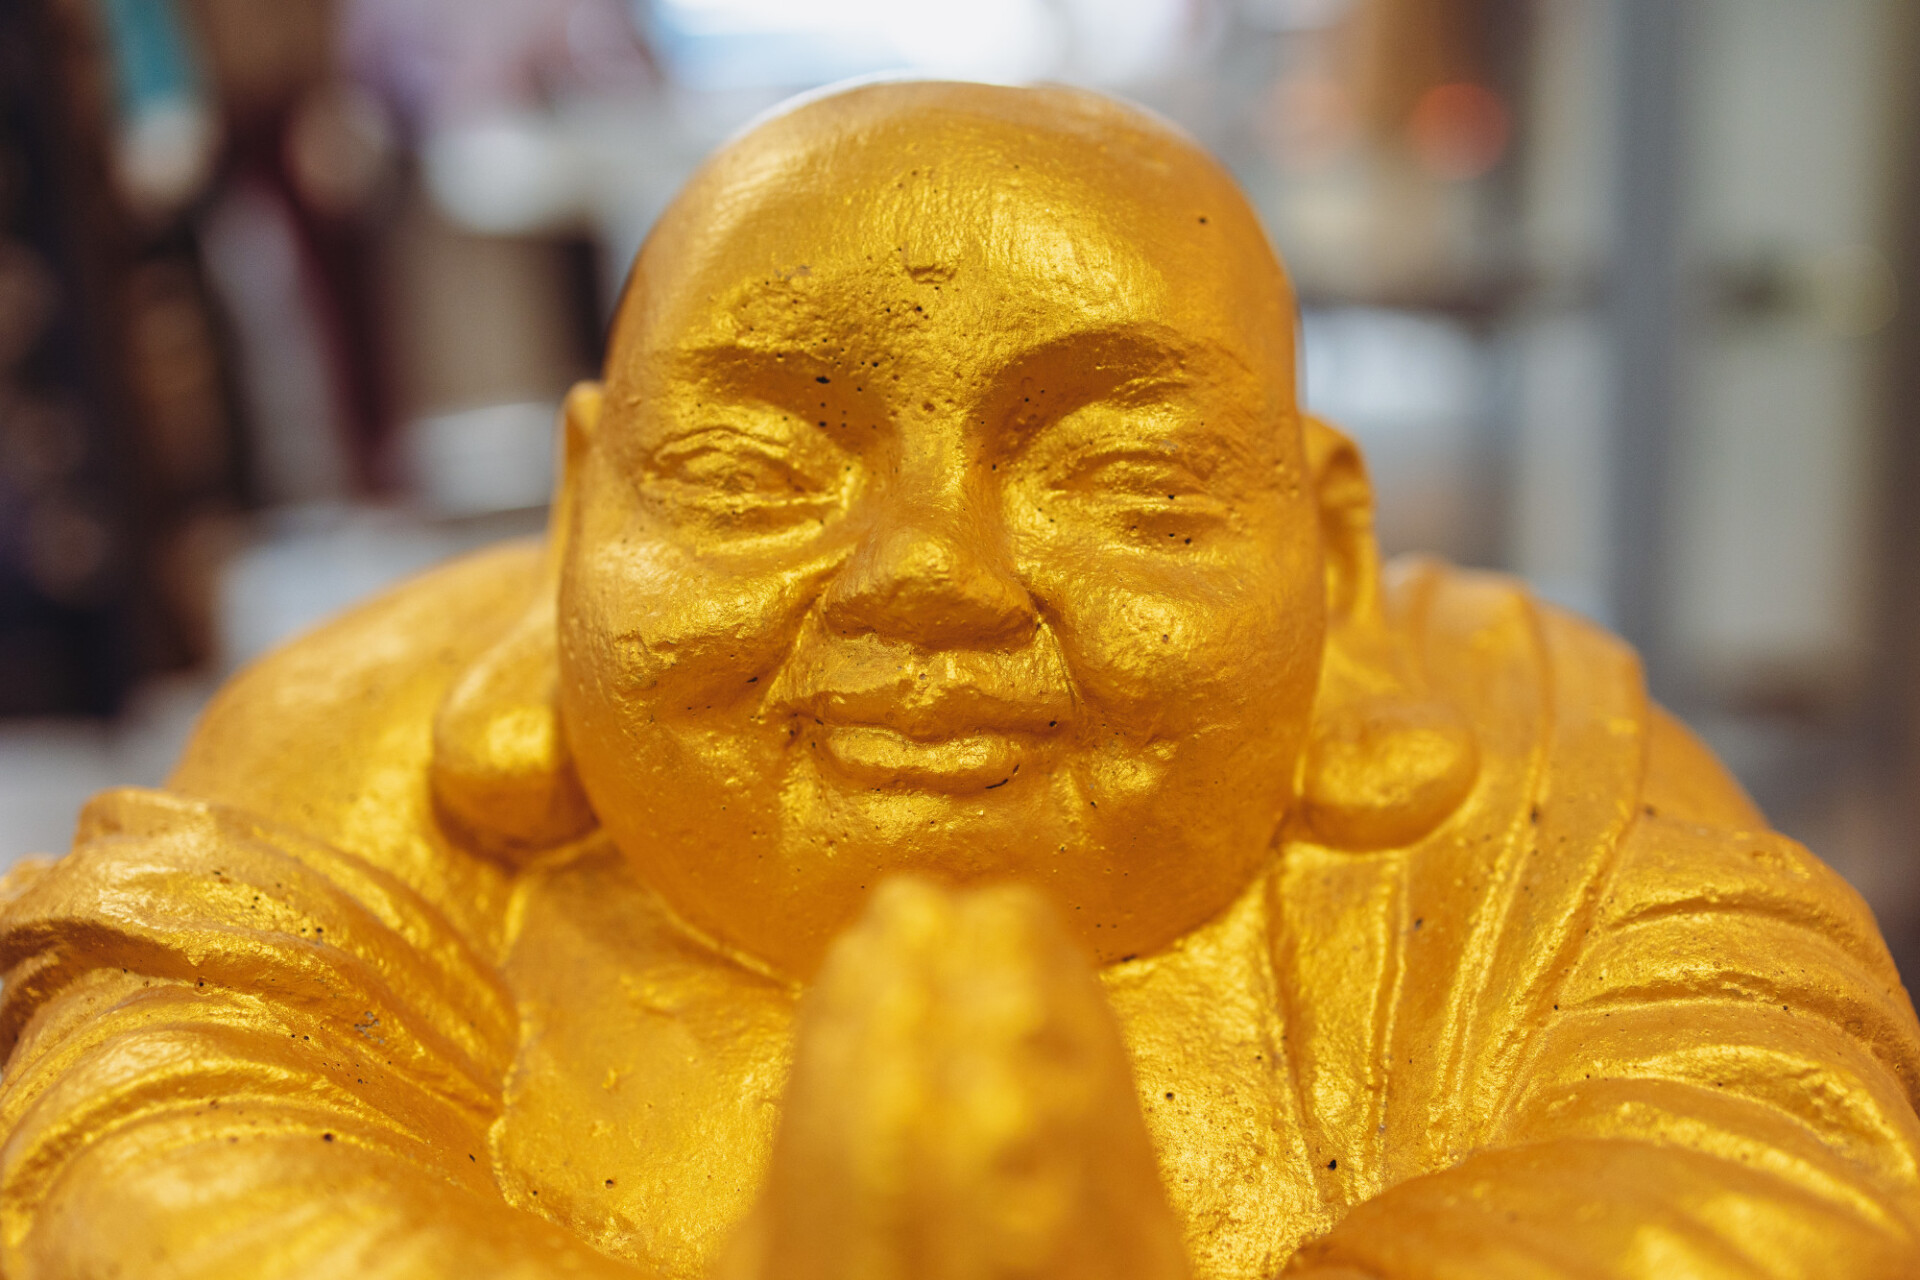 Golden Buddah Figure